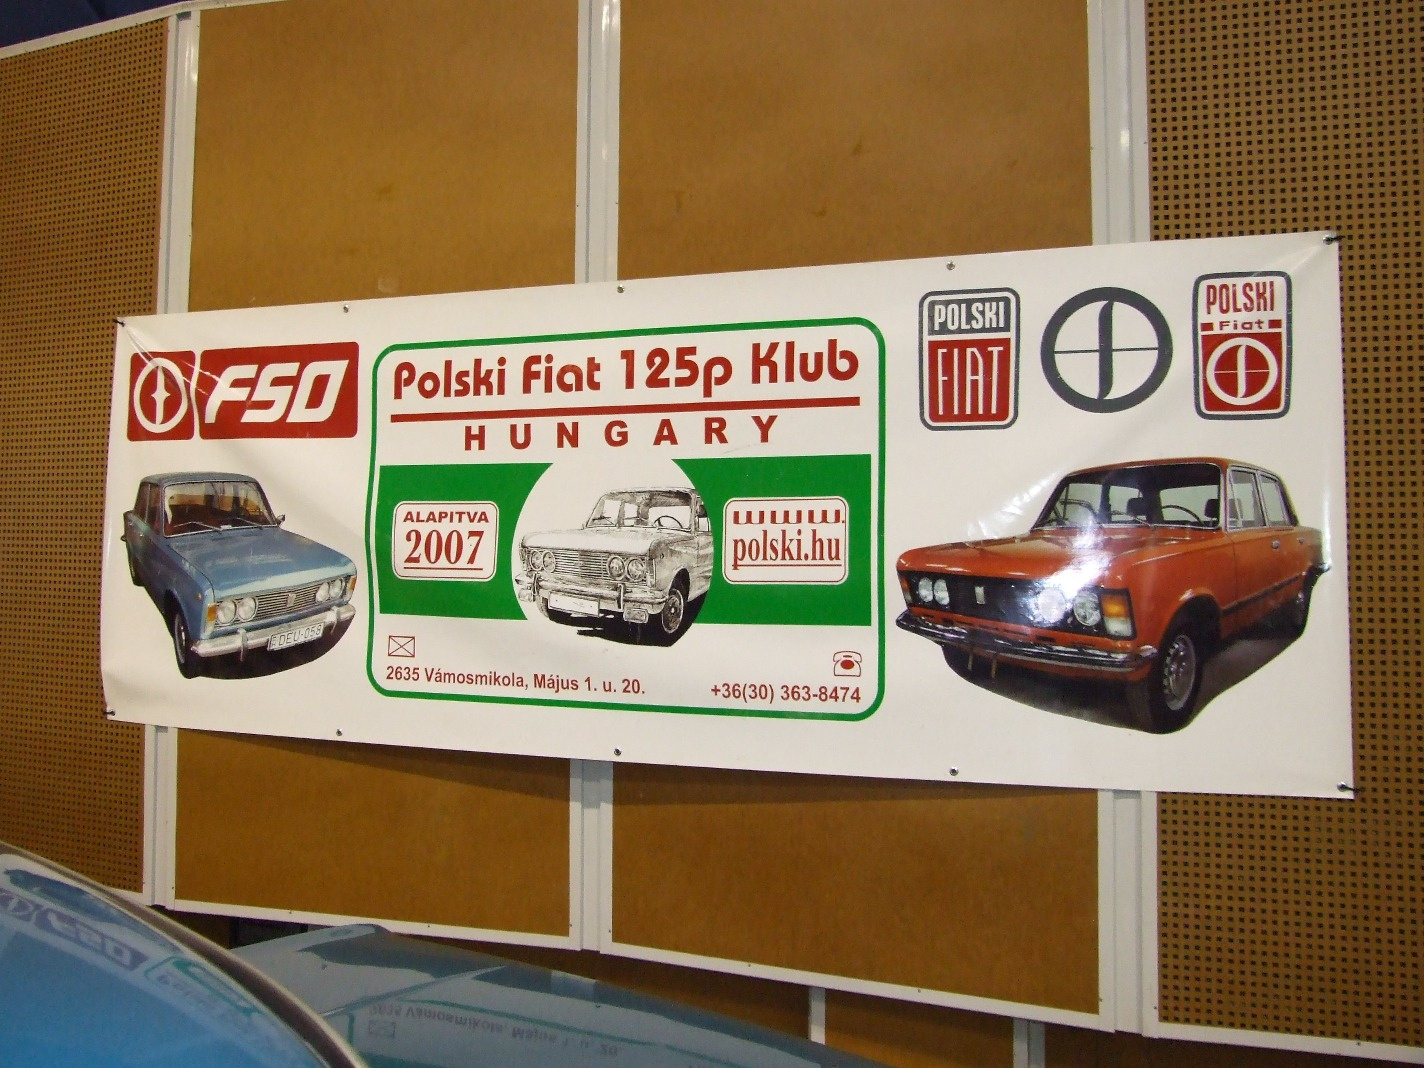 b Polski Fiat 125p Klub